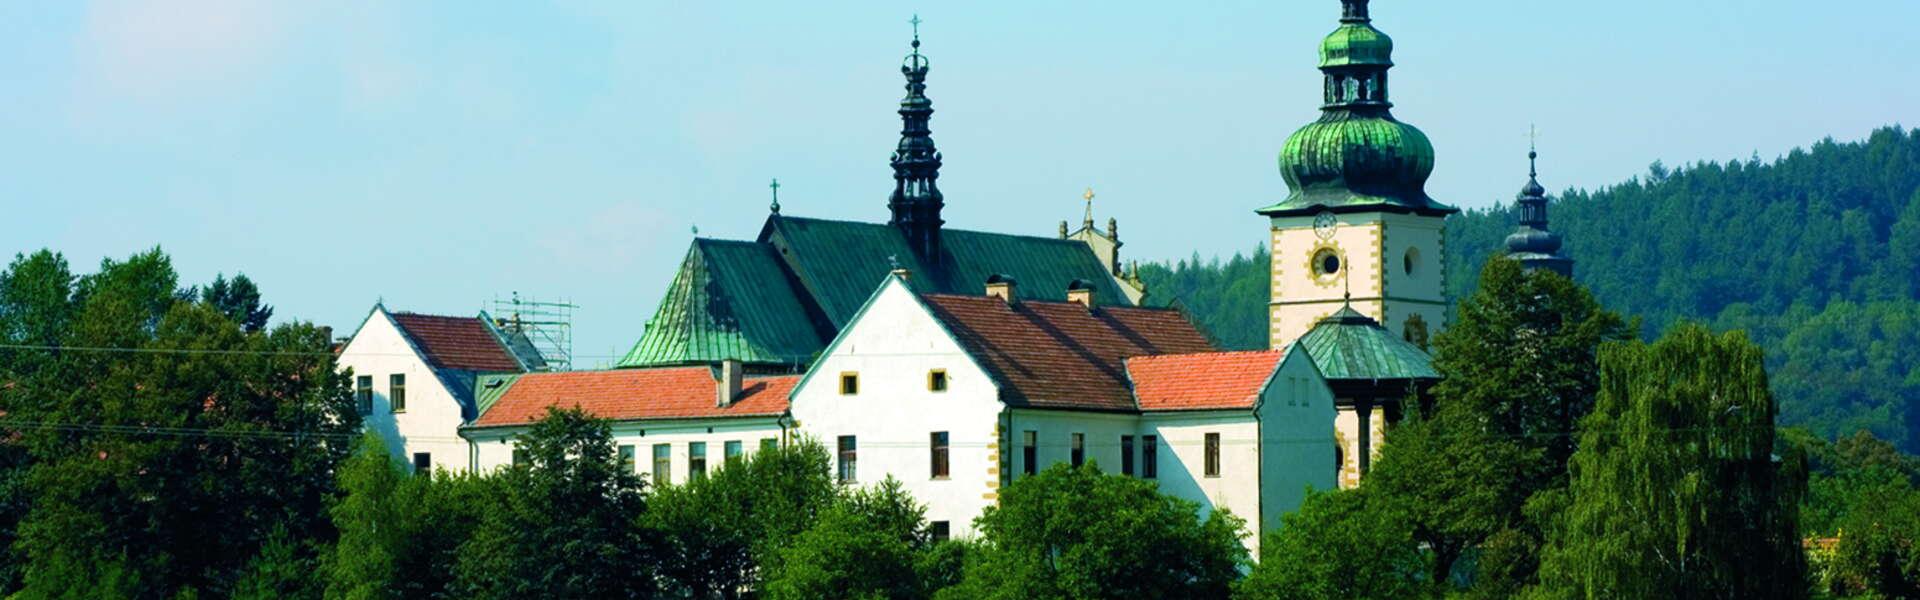 Imagen: Stary Sącz